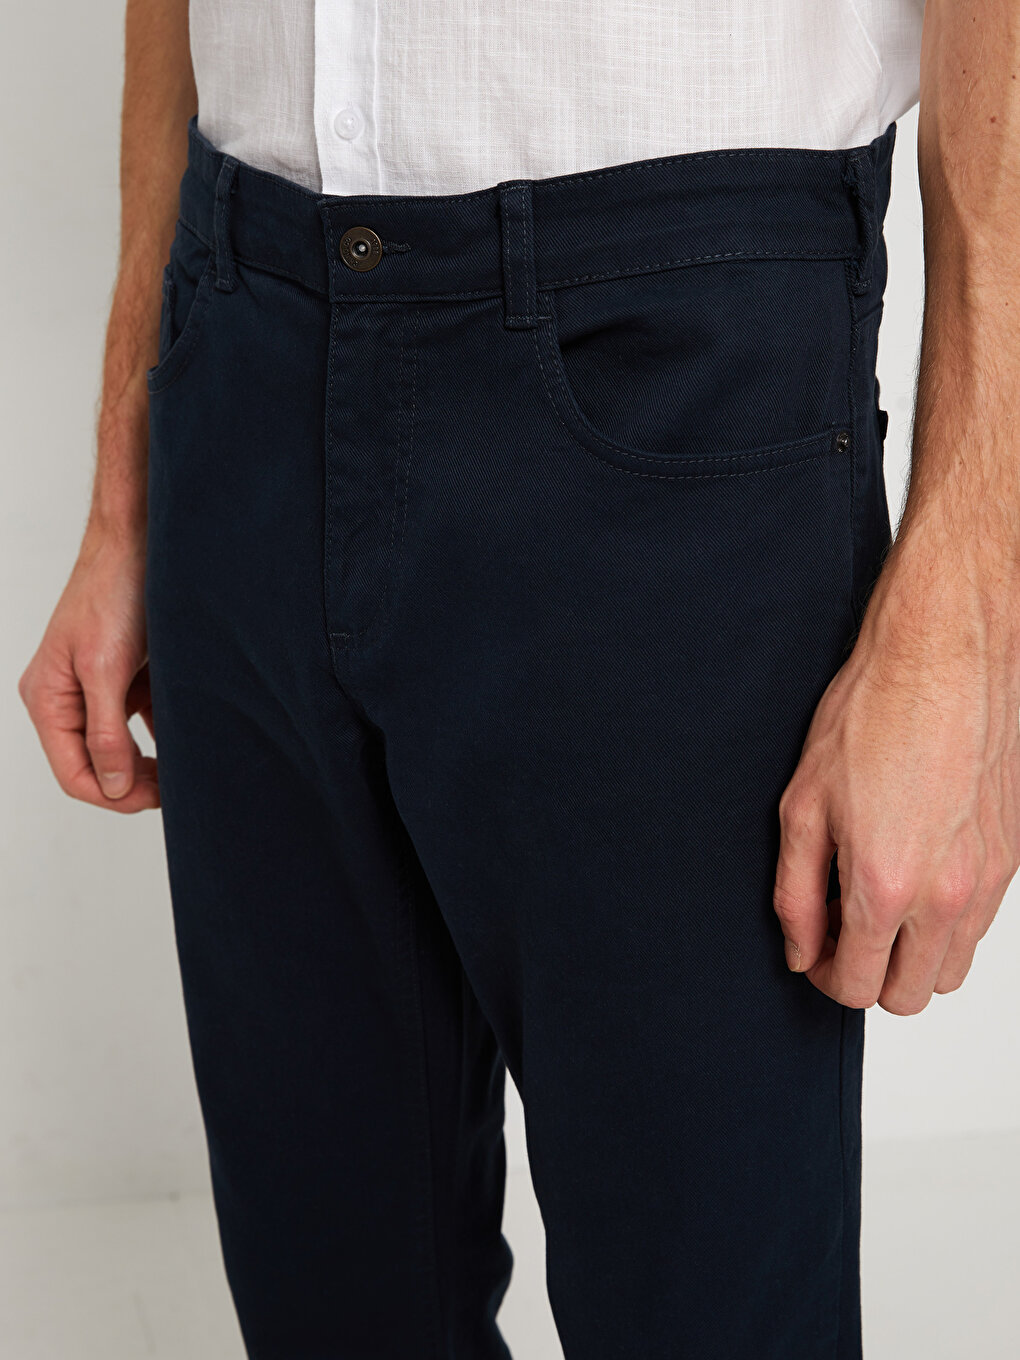 Standard Pattern Men's Chino Trousers -S30765Z8-KN7 - S30765Z8-KN7 - LC ...